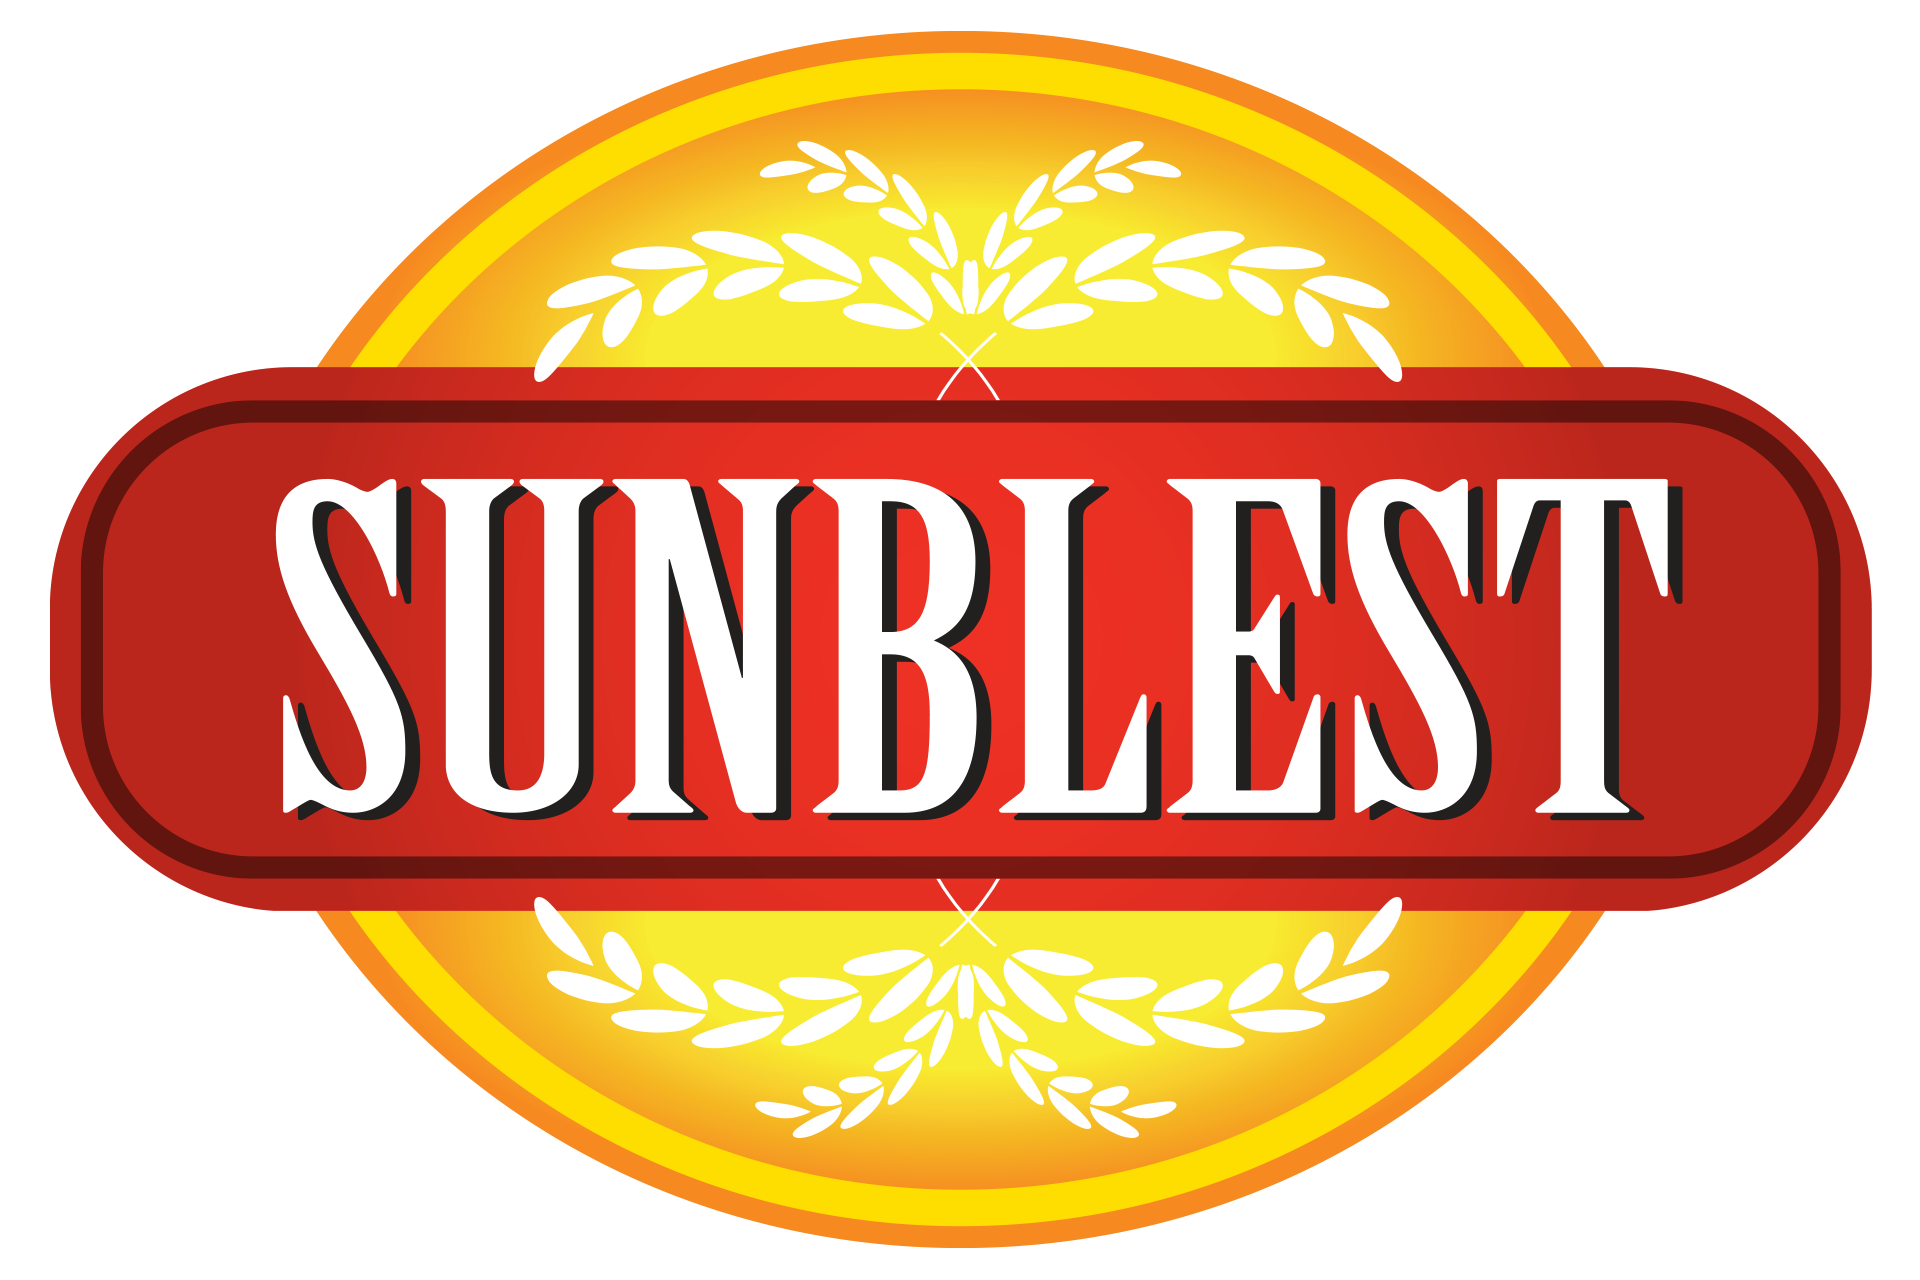 Sunblest logo